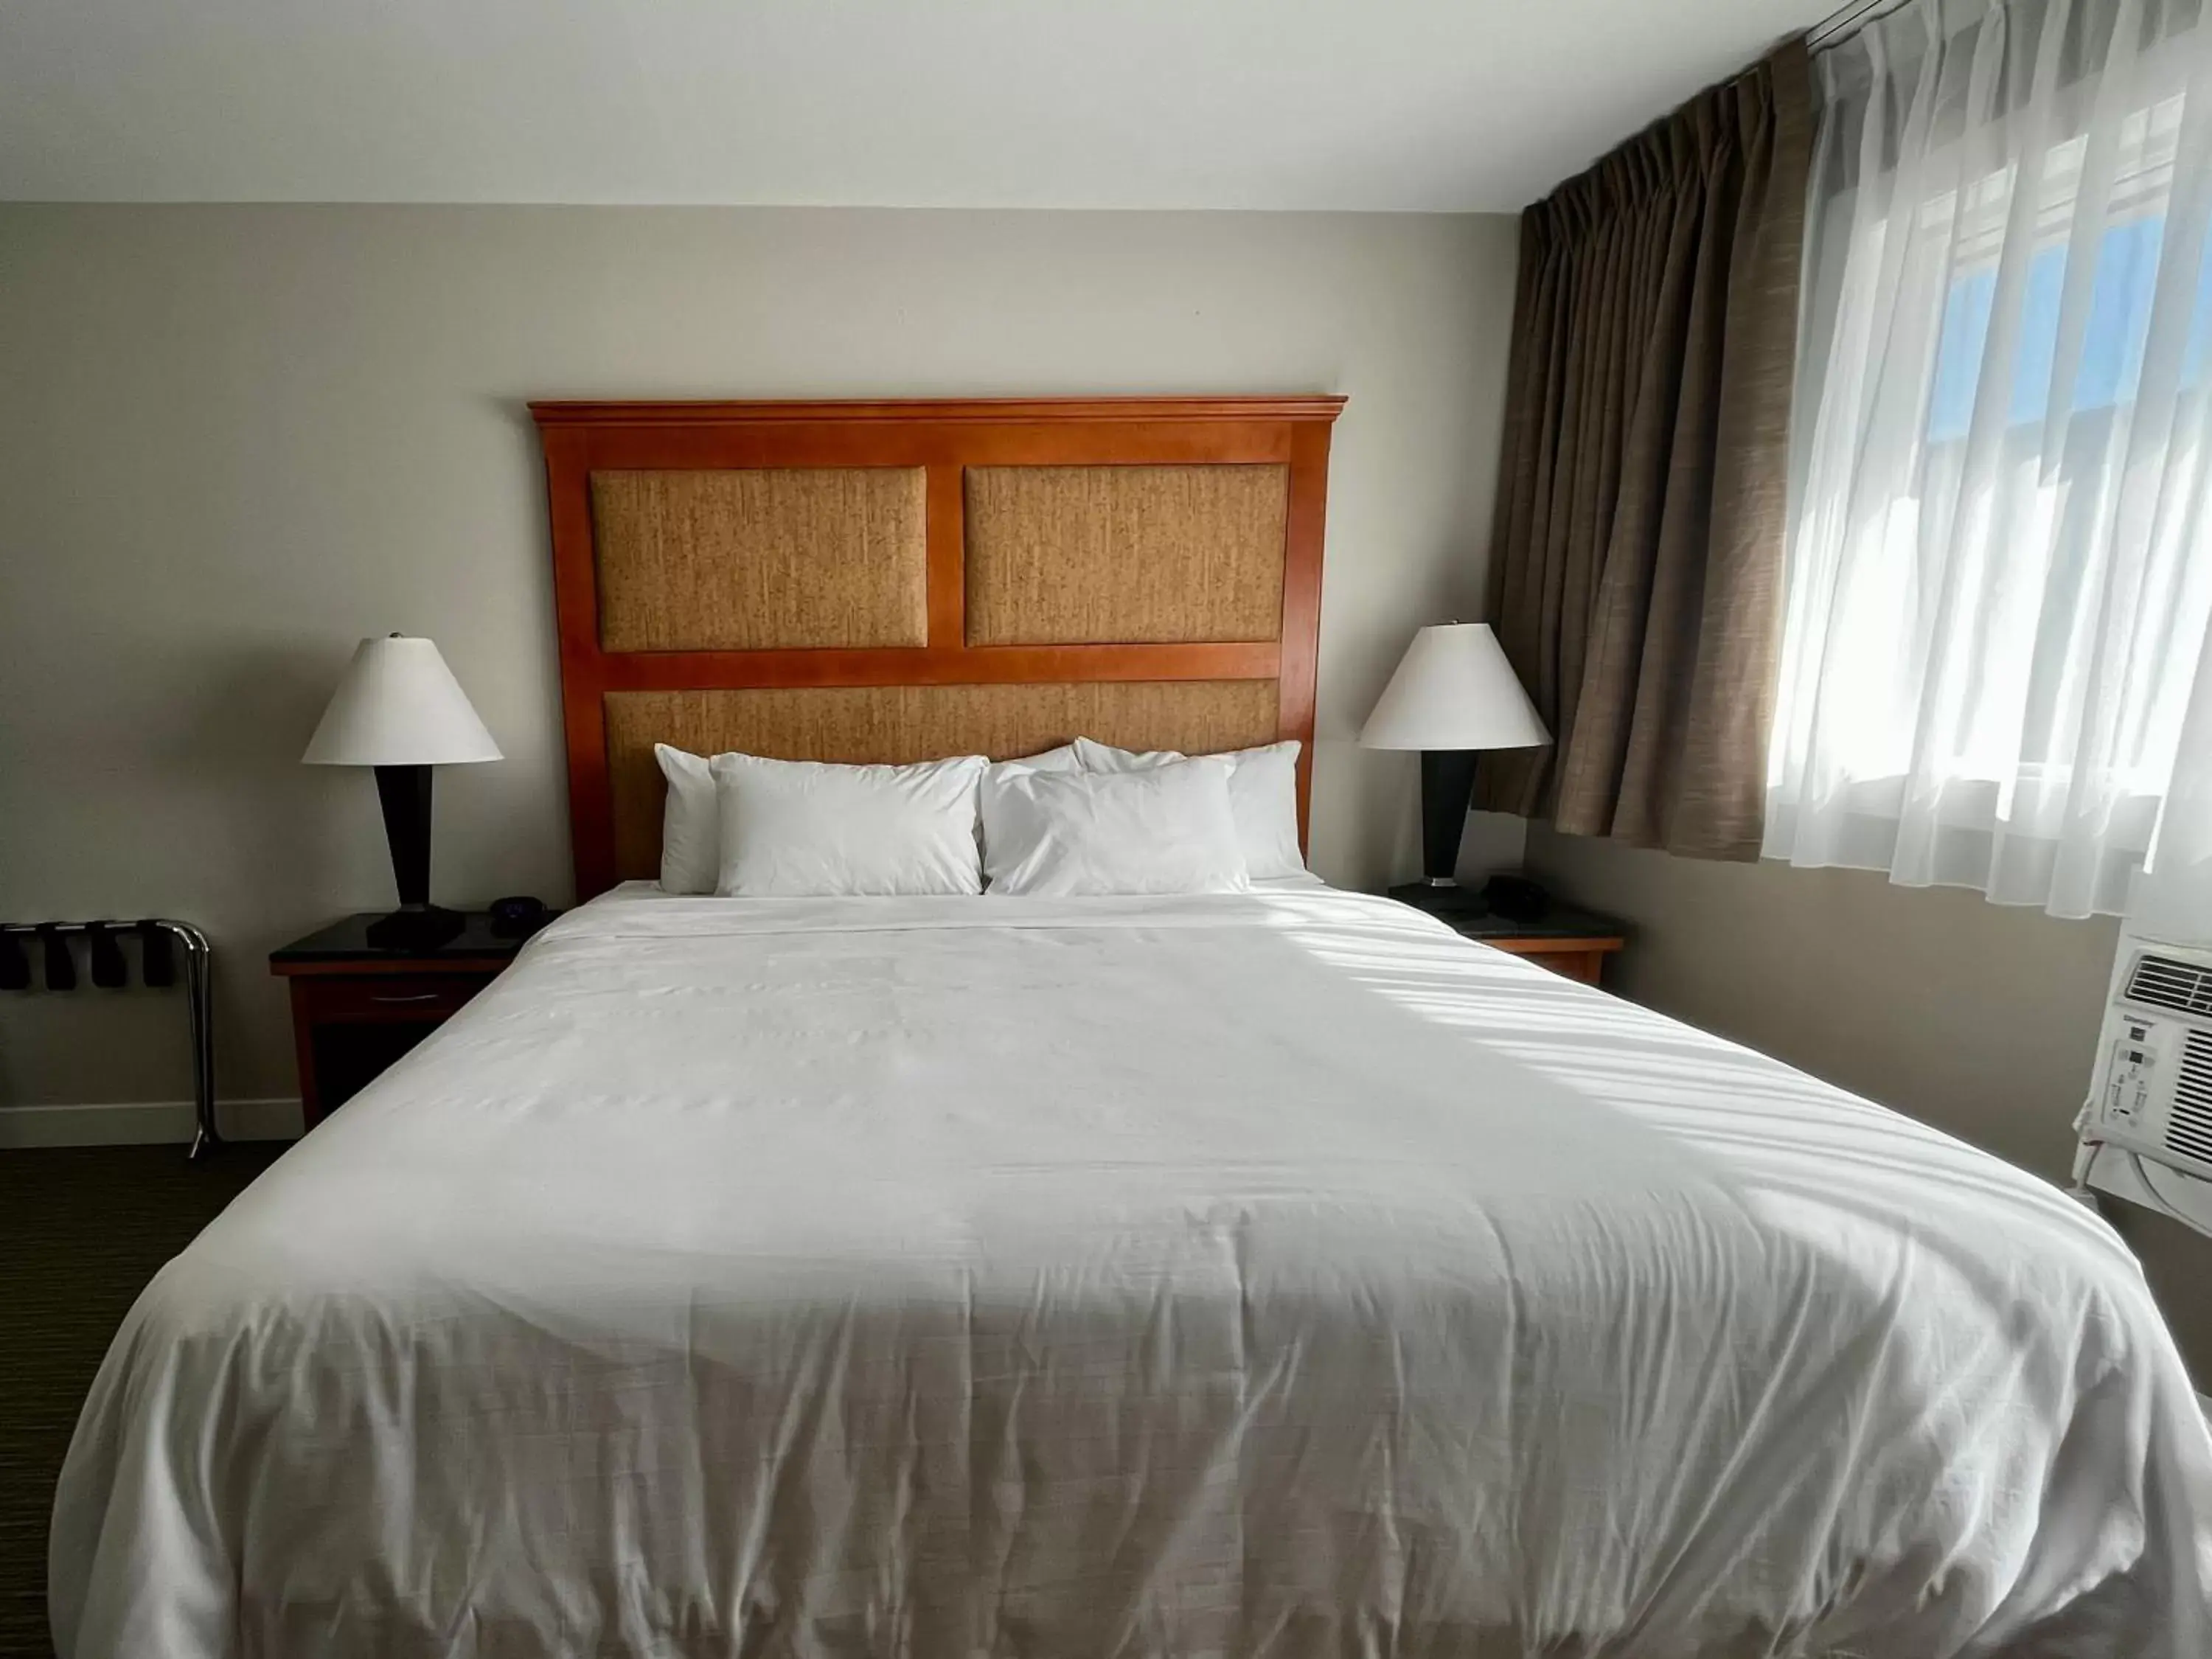 Bed in Anavada Inn & Suites - Prince George